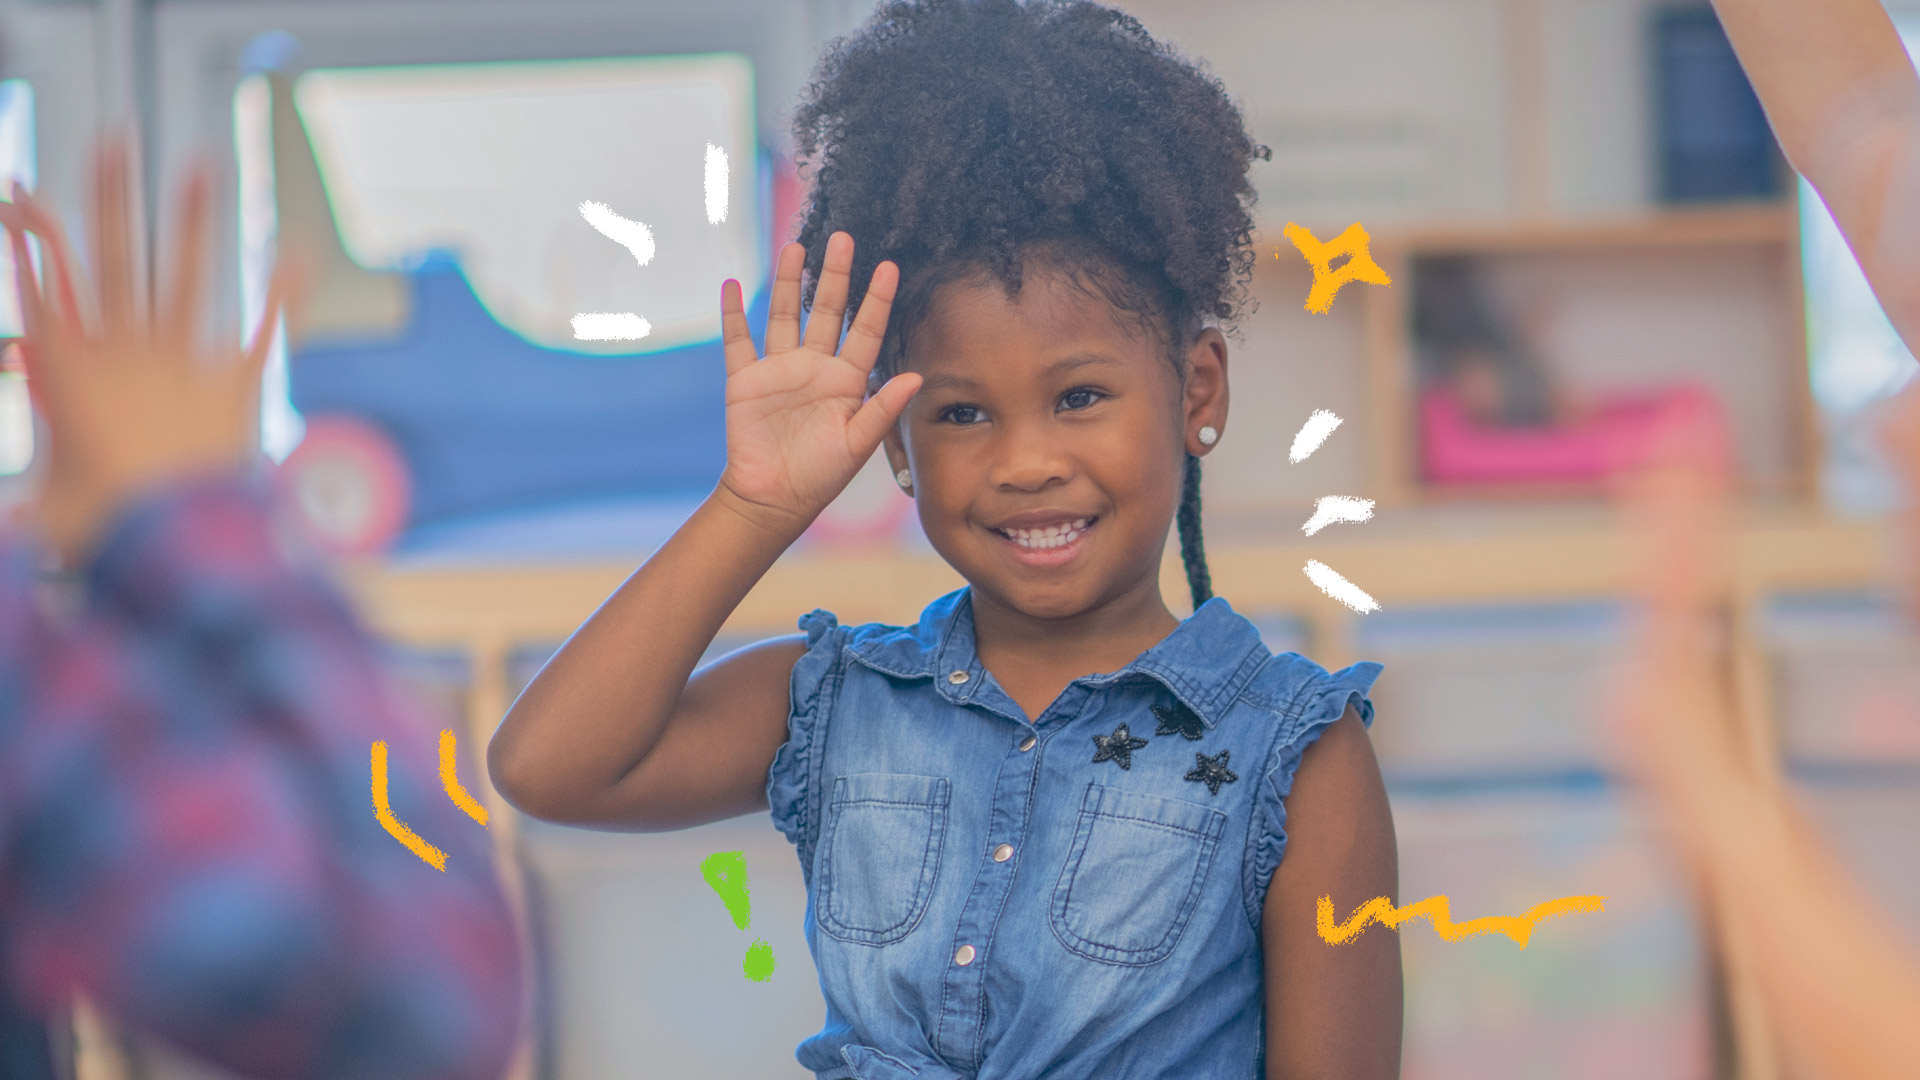 Tecnologia e educação: Imagem de uma menina negra, vestindo camisa jeans está sorrindo e acenando em língua de sinais (Libras), enquanto uma pessoa adulta (de costas, desfocada) aparece à sua frente fazendo o mesmo sinal